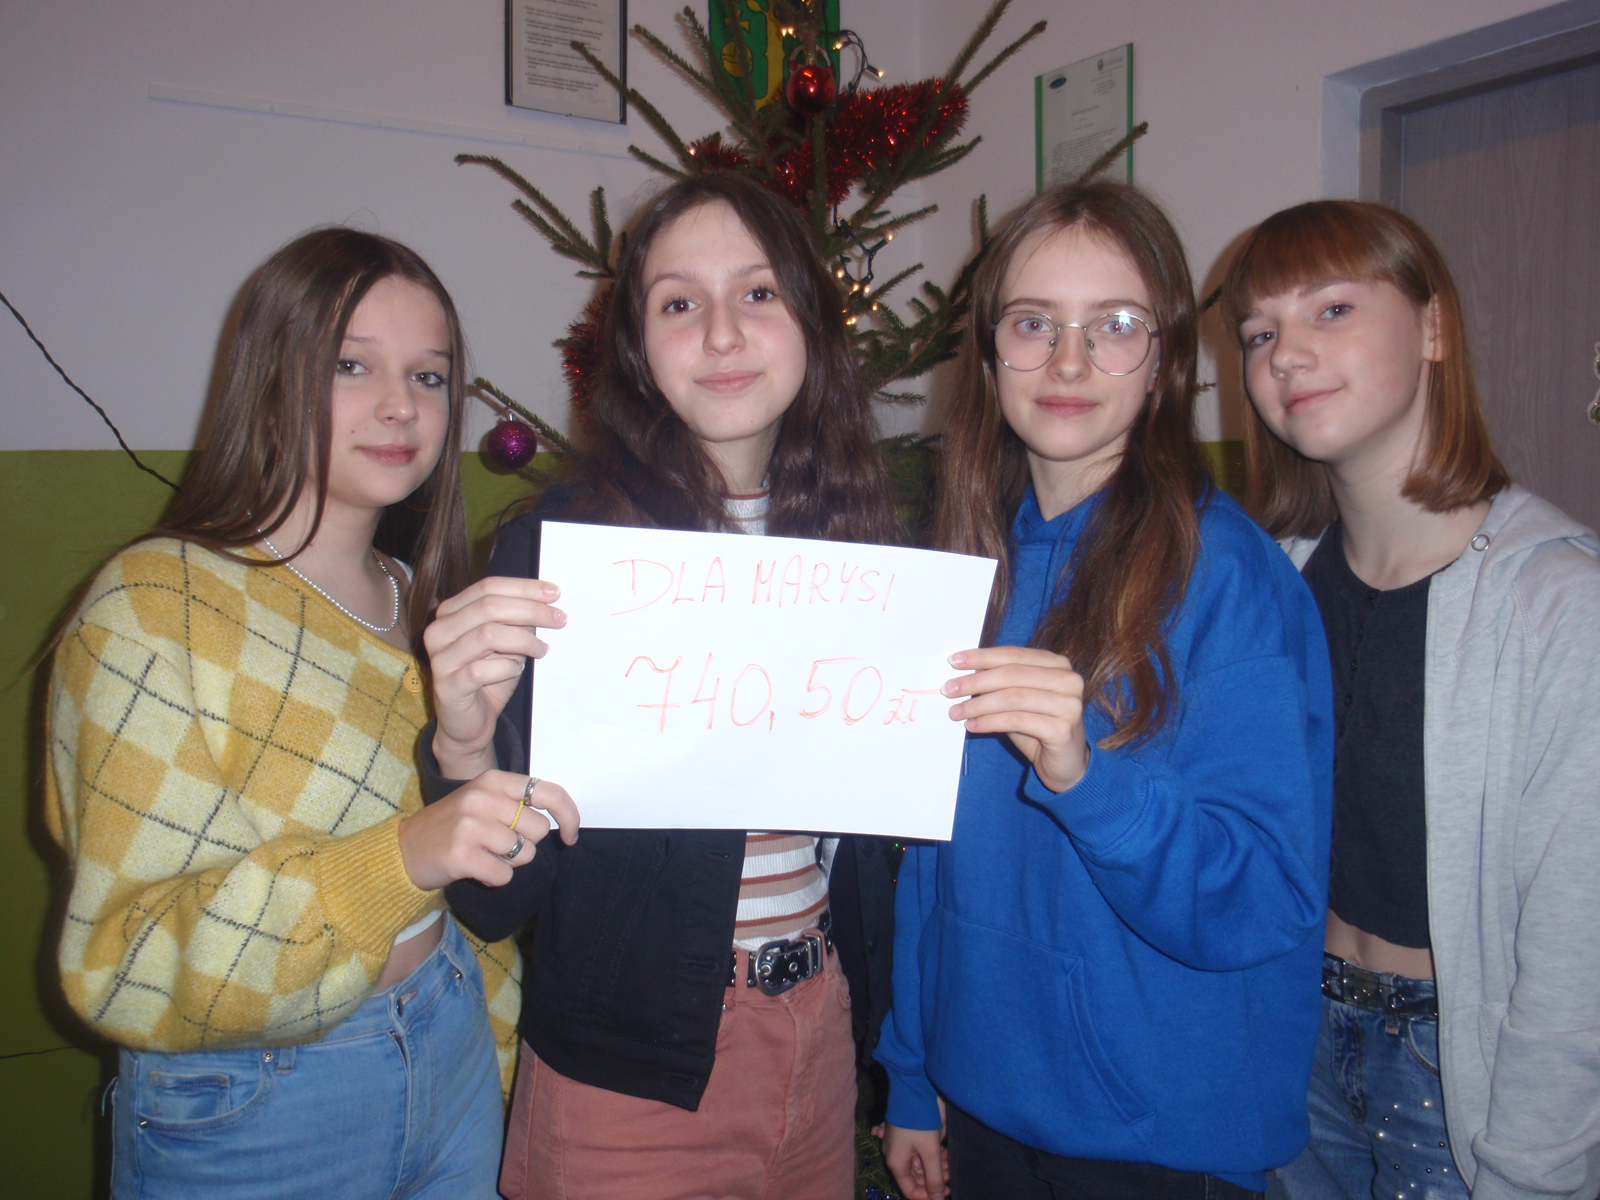 4 dziewczynki  ,trzy  z nich trzymają kartkę z napisem ‘’Dla Marysi ‘’ i napisaną kwotą pieniężną uzbieraną podczas akcji – 740,50 zł.Za uczennicami stoi udekorowana choinka